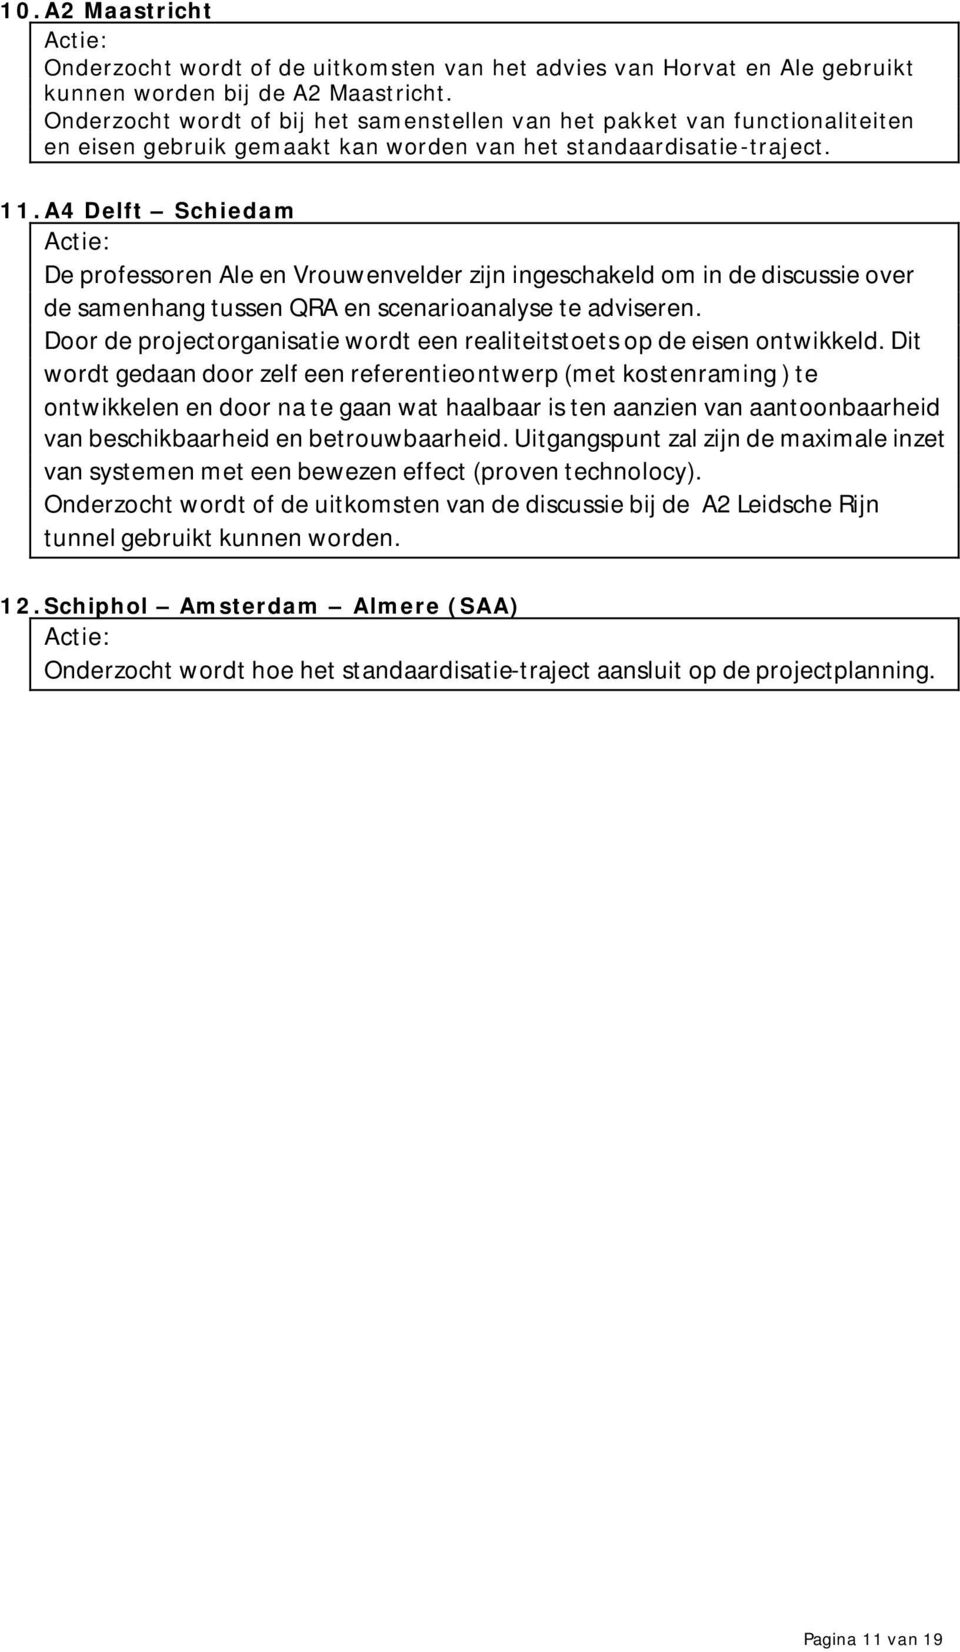 A4 Delft Schiedam Actie: De professoren Ale en Vrouwenvelder zijn ingeschakeld om in de discussie over de samenhang tussen QRA en scenarioanalyse te adviseren.